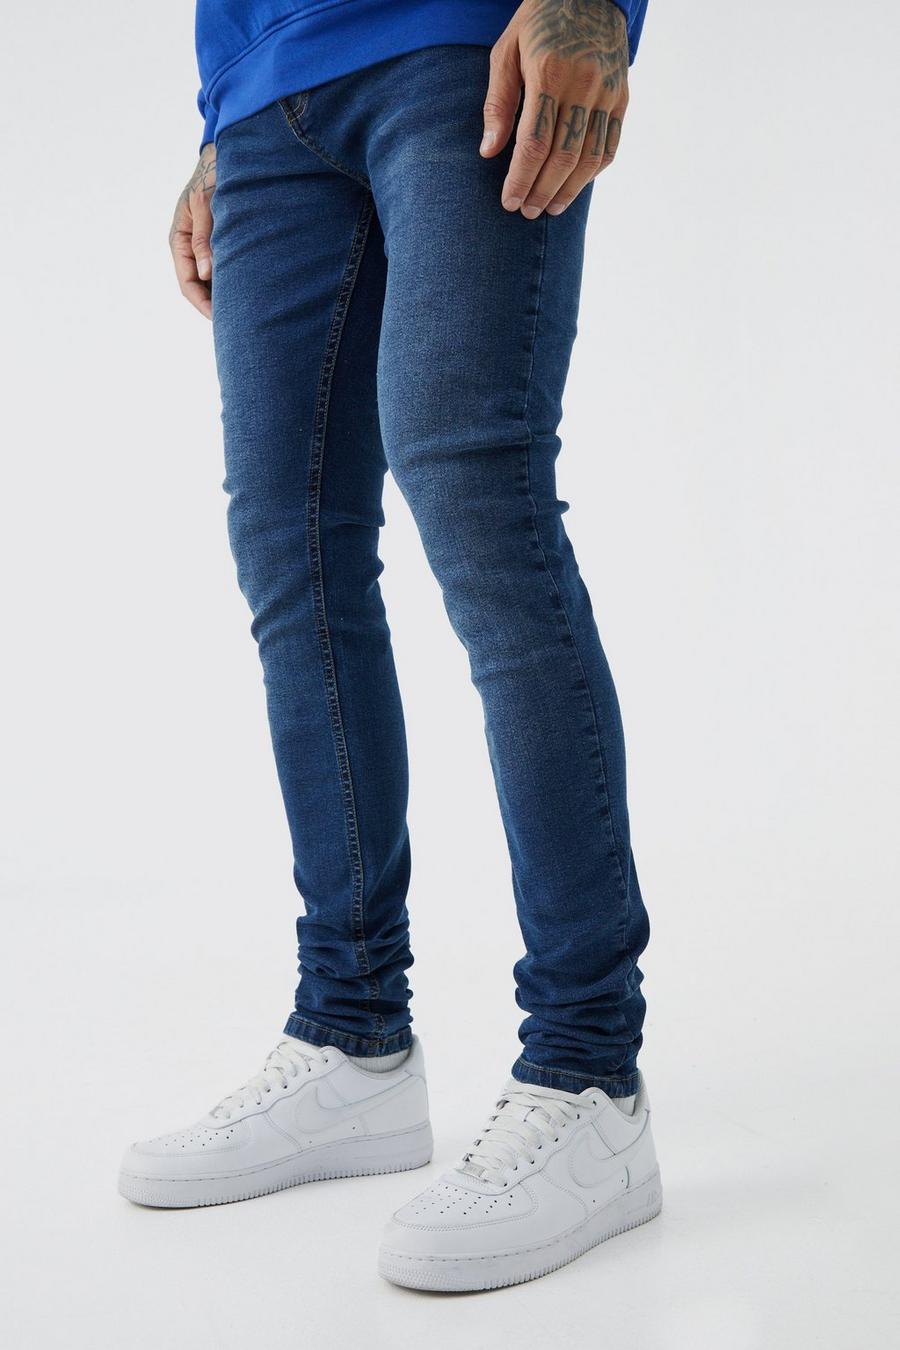 Jeans Tall Skinny Fit in denim Stretch con pieghe sul fondo e tinte colorate, Vintage blue